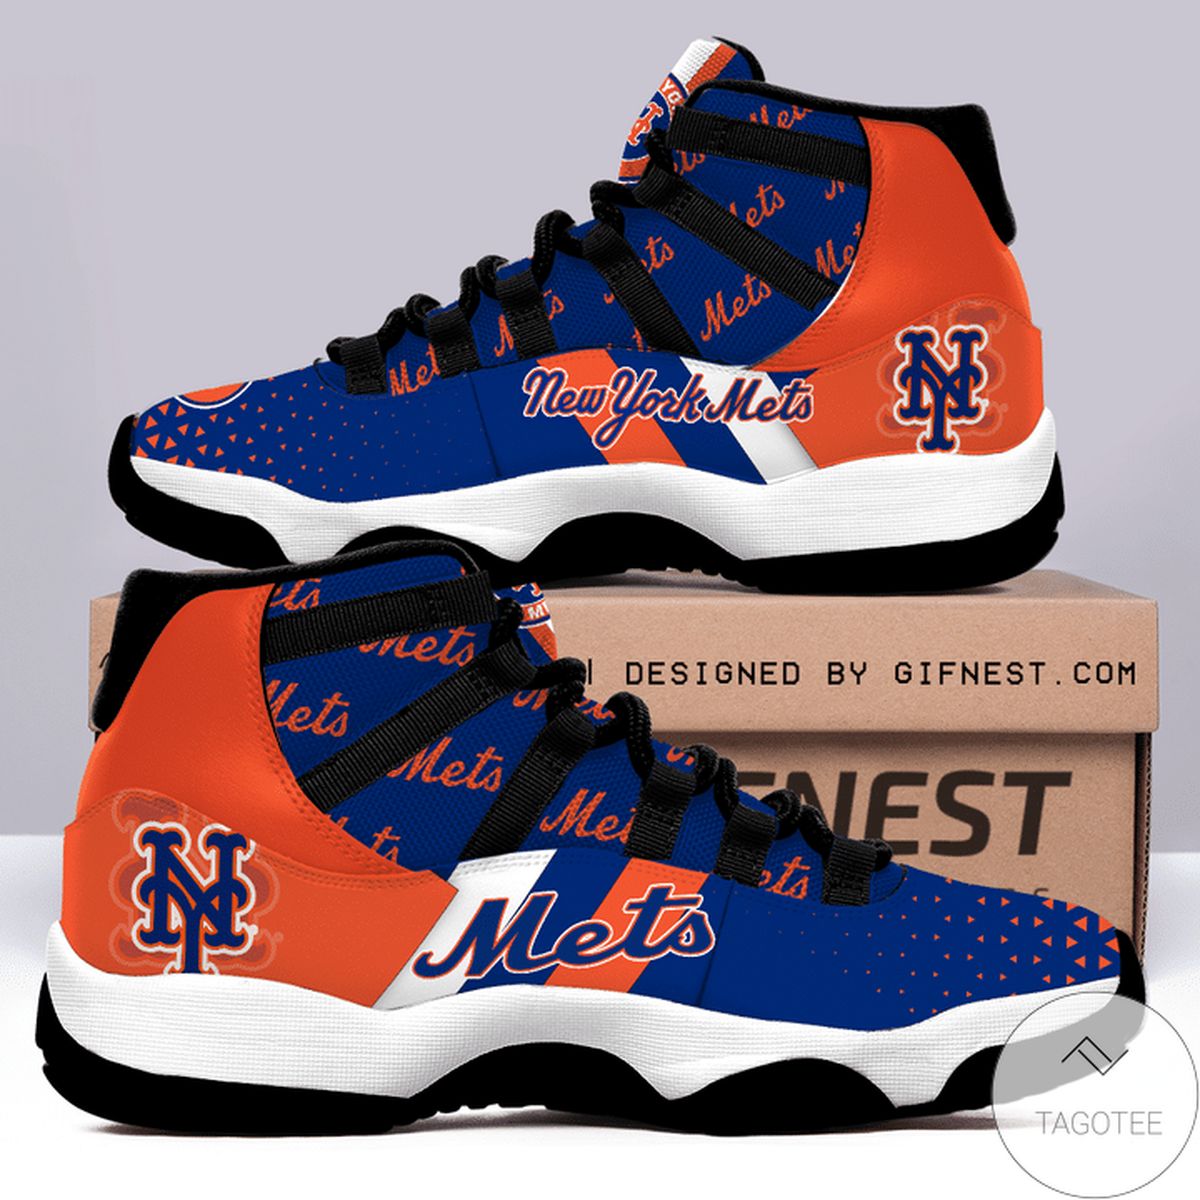 New York Mets Air Jordan 11 Shoes